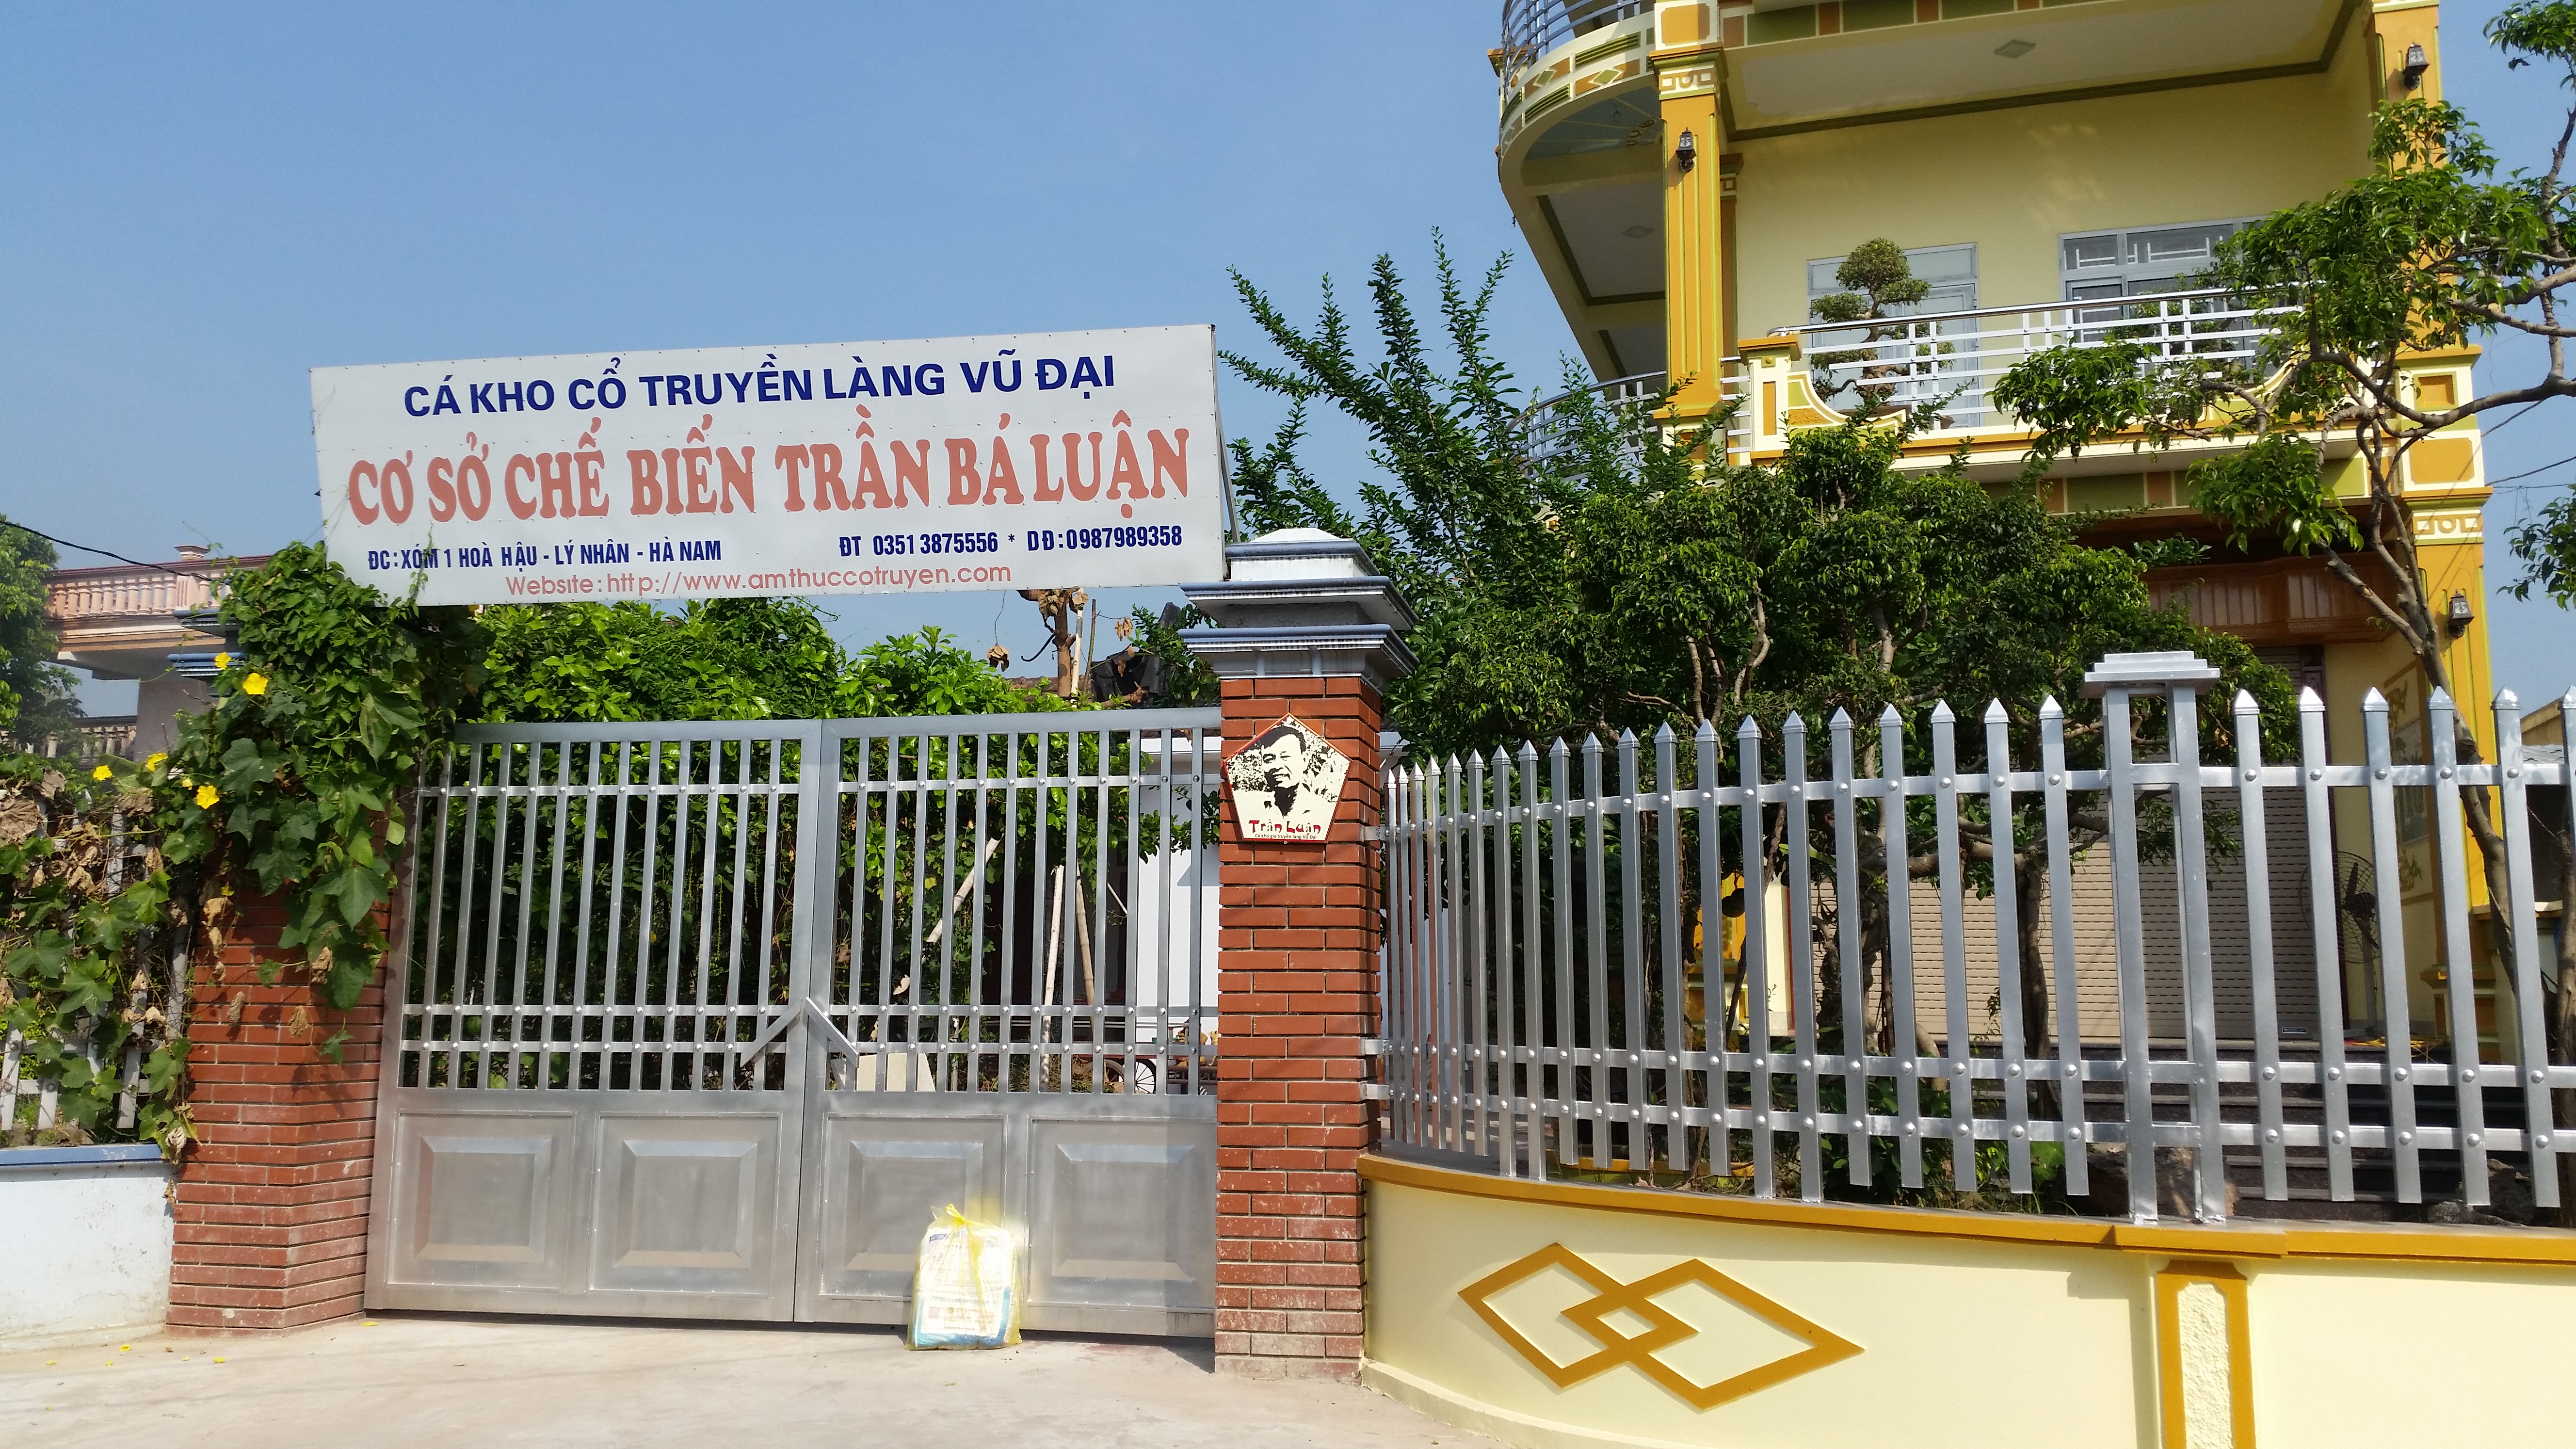 Cơ sở cá kho Trần Luận làng Vũ Đại